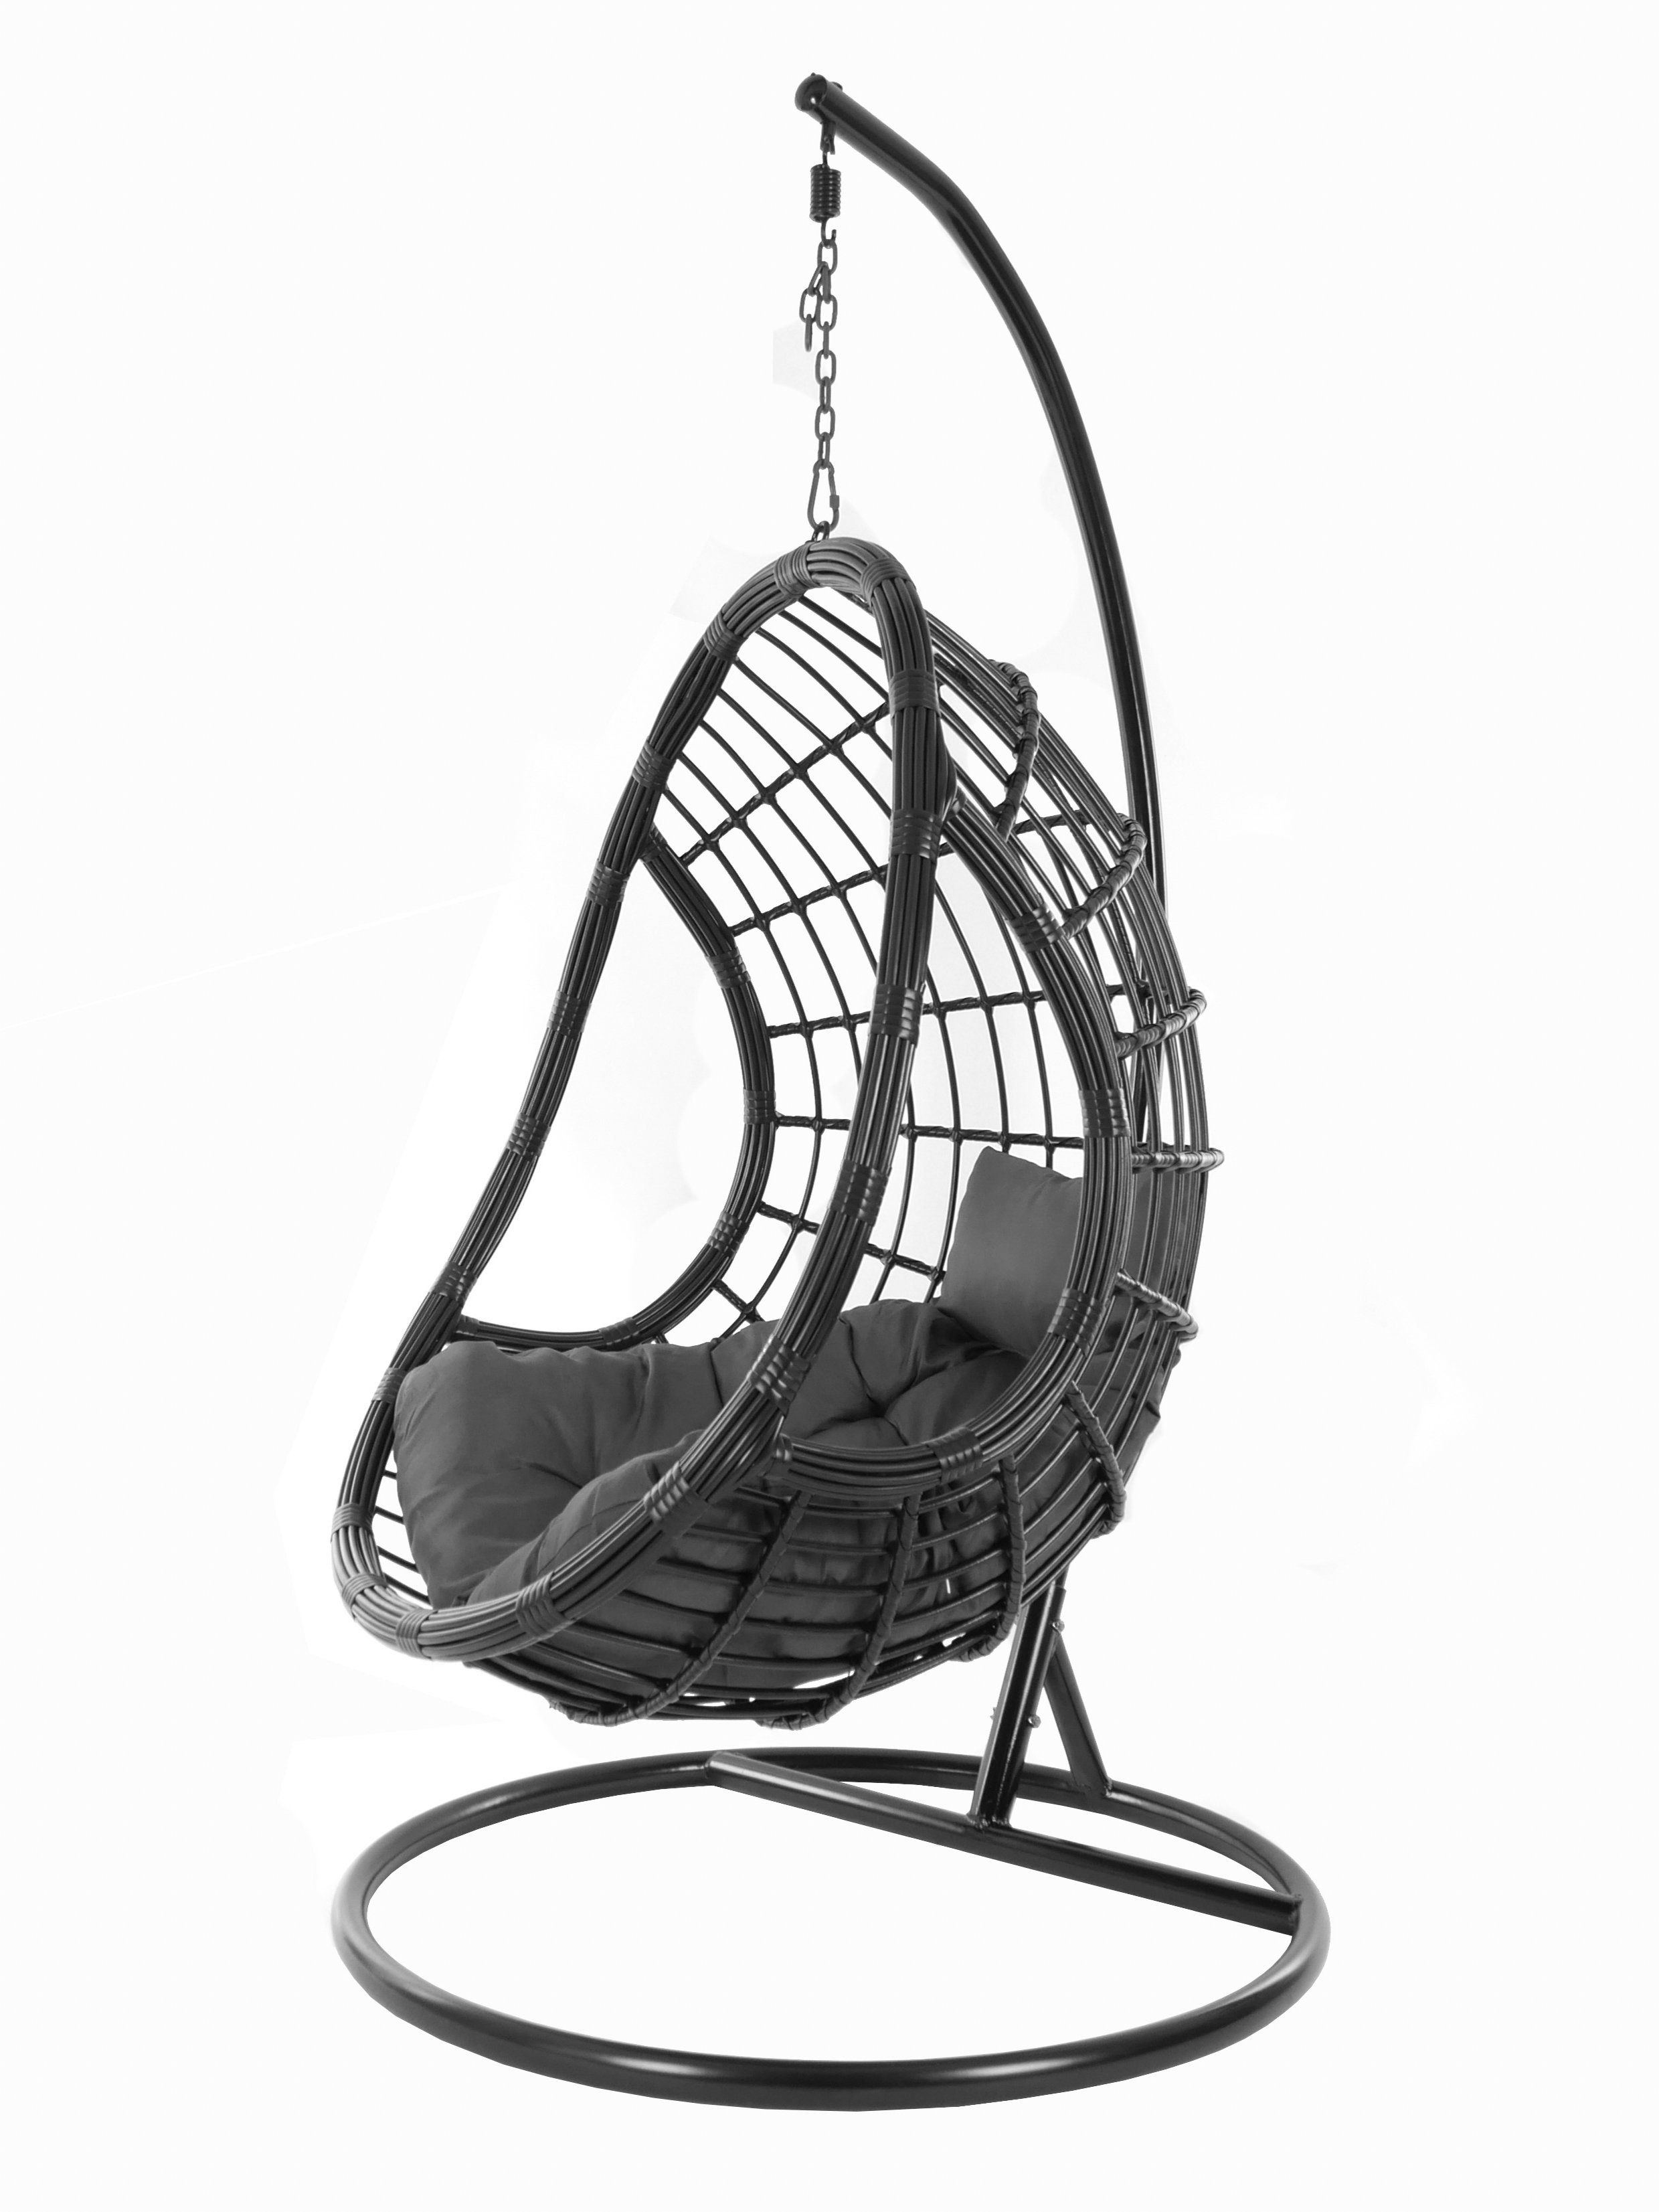 KIDEO Hängesessel PALMANOVA black, Swing schwarz, und shadow) dunkelgrau edles Gestell mit Loungemöbel, Kissen, Hängesessel (8999 Schwebesessel, Chair, Design